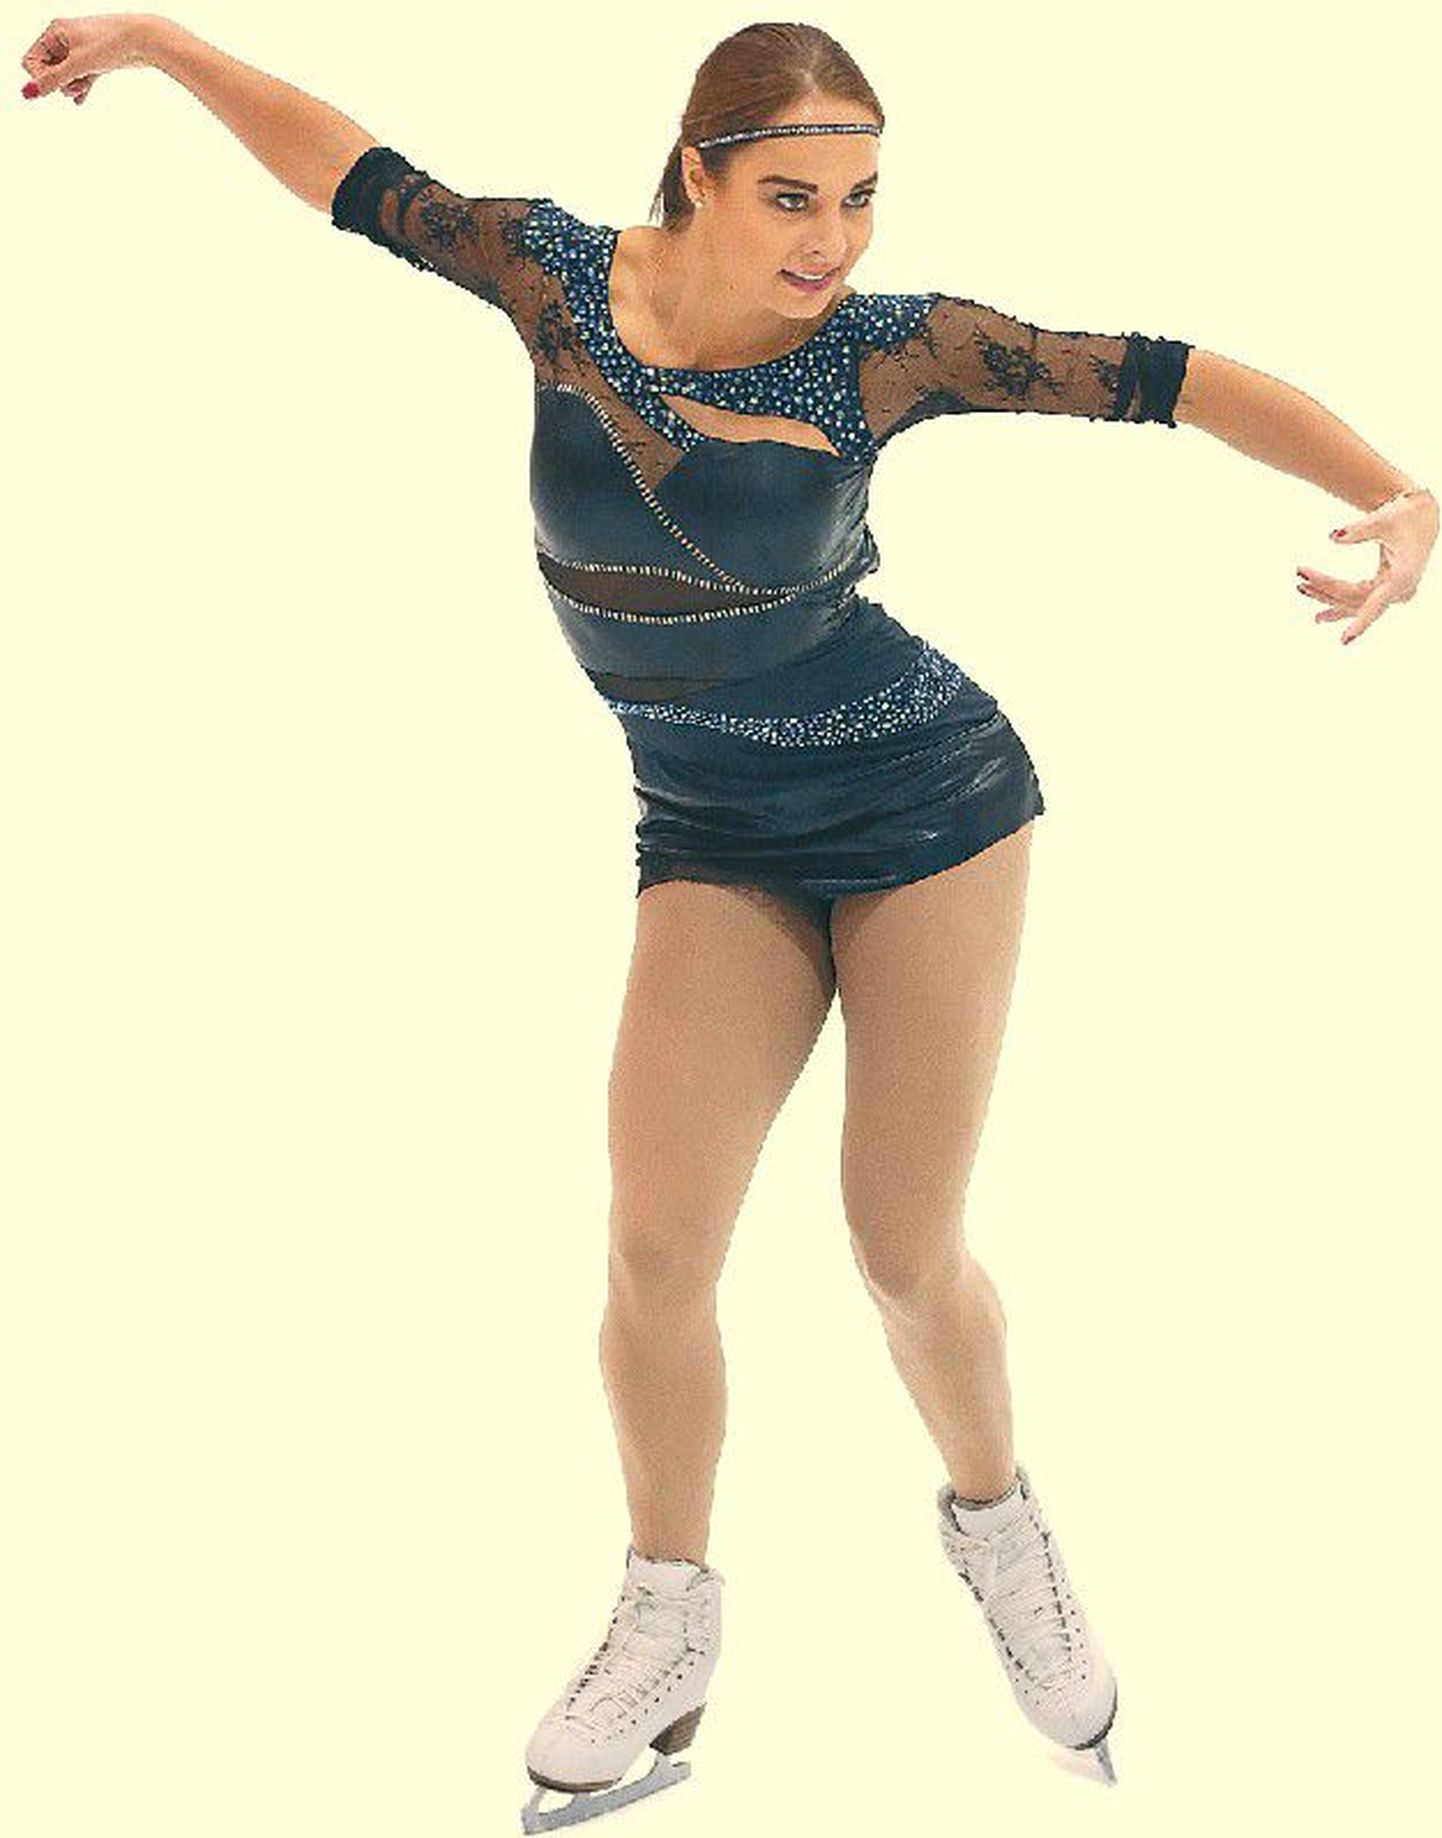 Фигуристка Елена Глебова открыла сезон в Солт-Лейк-Сити на соревновании U.S. International Figure Skating Classic, где заняла 4-е место.